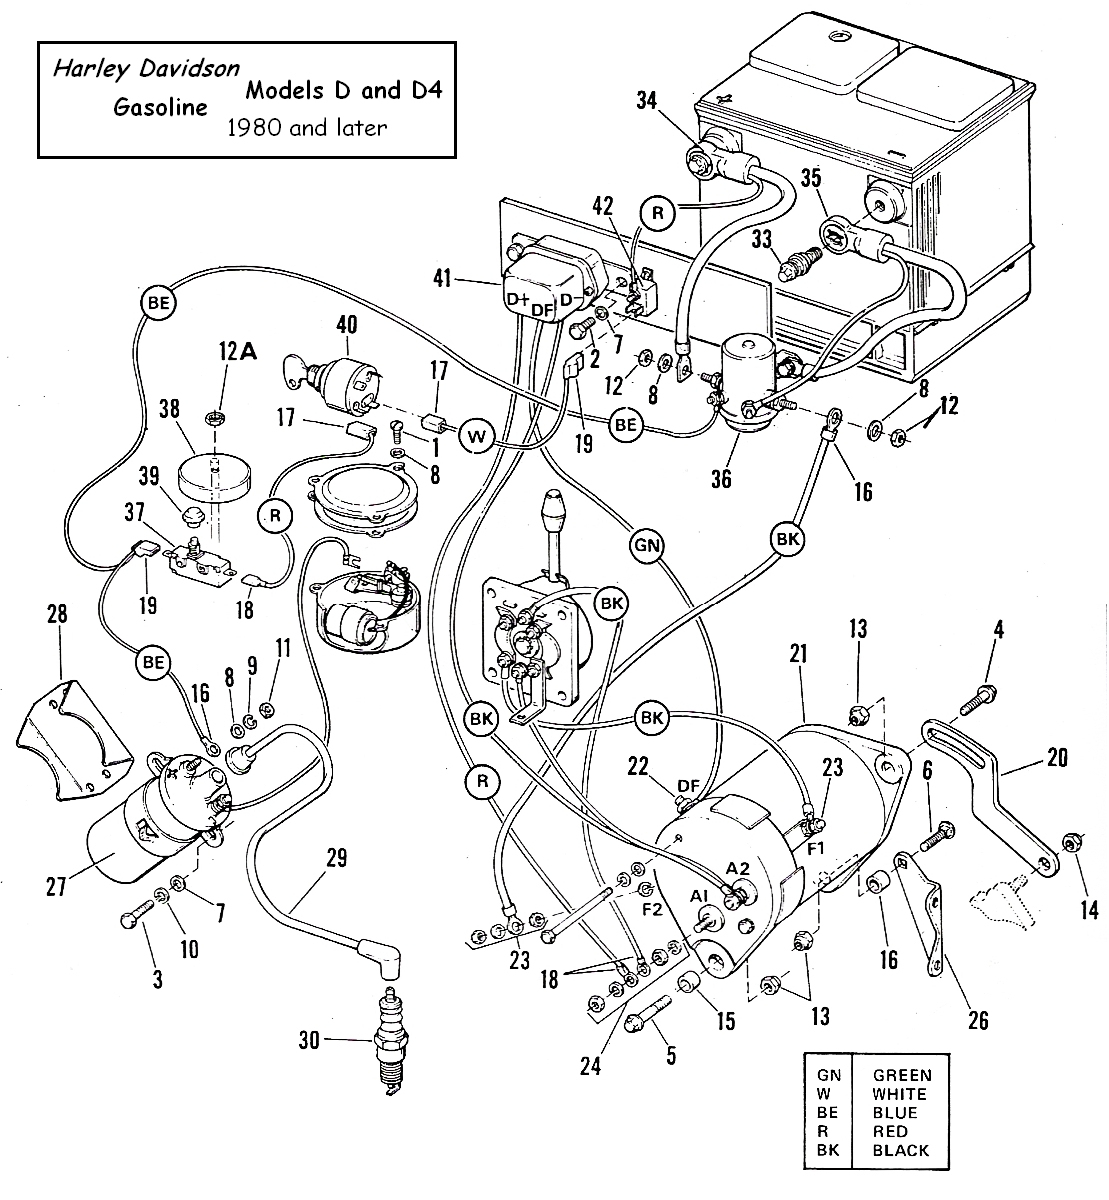 Harley Davidson Gas Golf Cart Wiring Diagram | Wiring Diagram - Harley Davidson Wiring Diagram